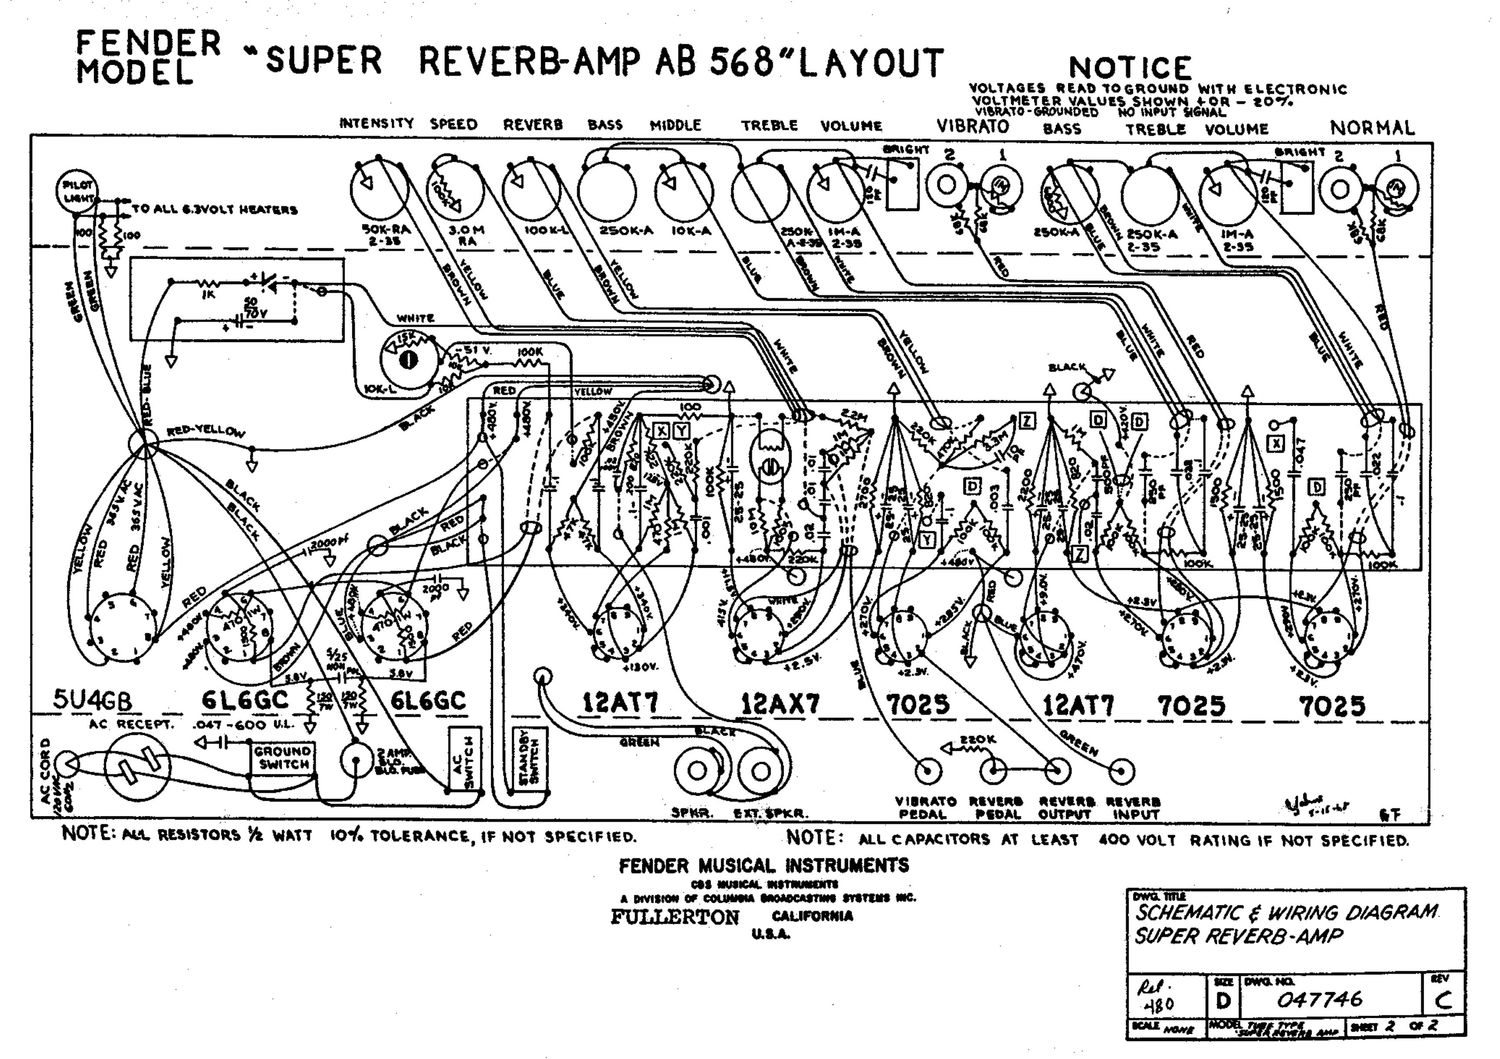 fender super reverb ab568 layout schematic